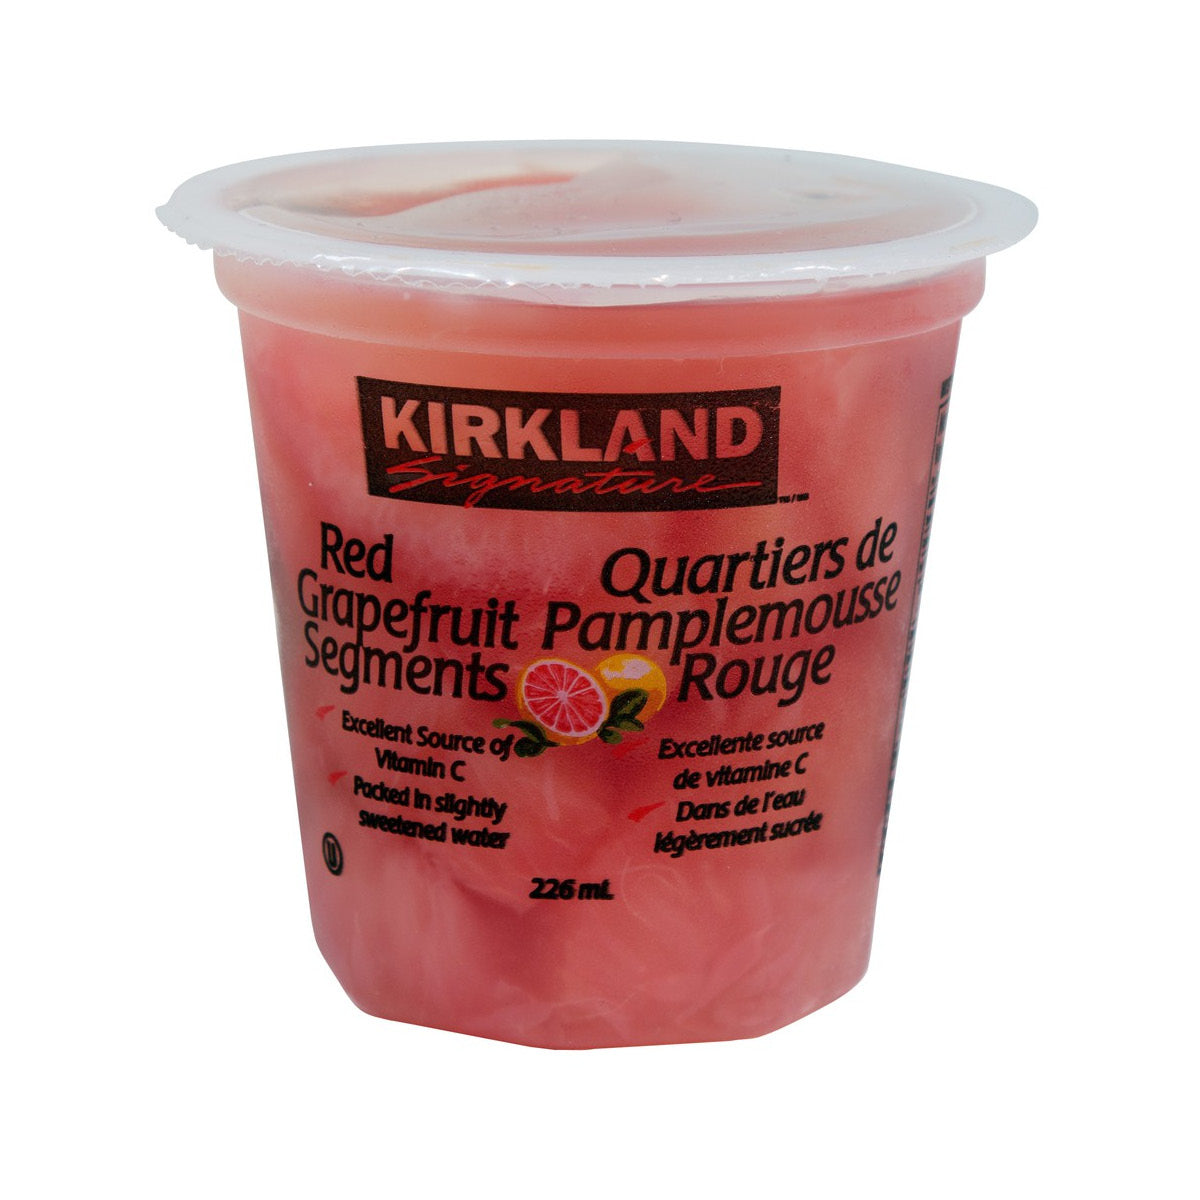 Kirkland Signature Red Grapefruit Cup, 226 ml